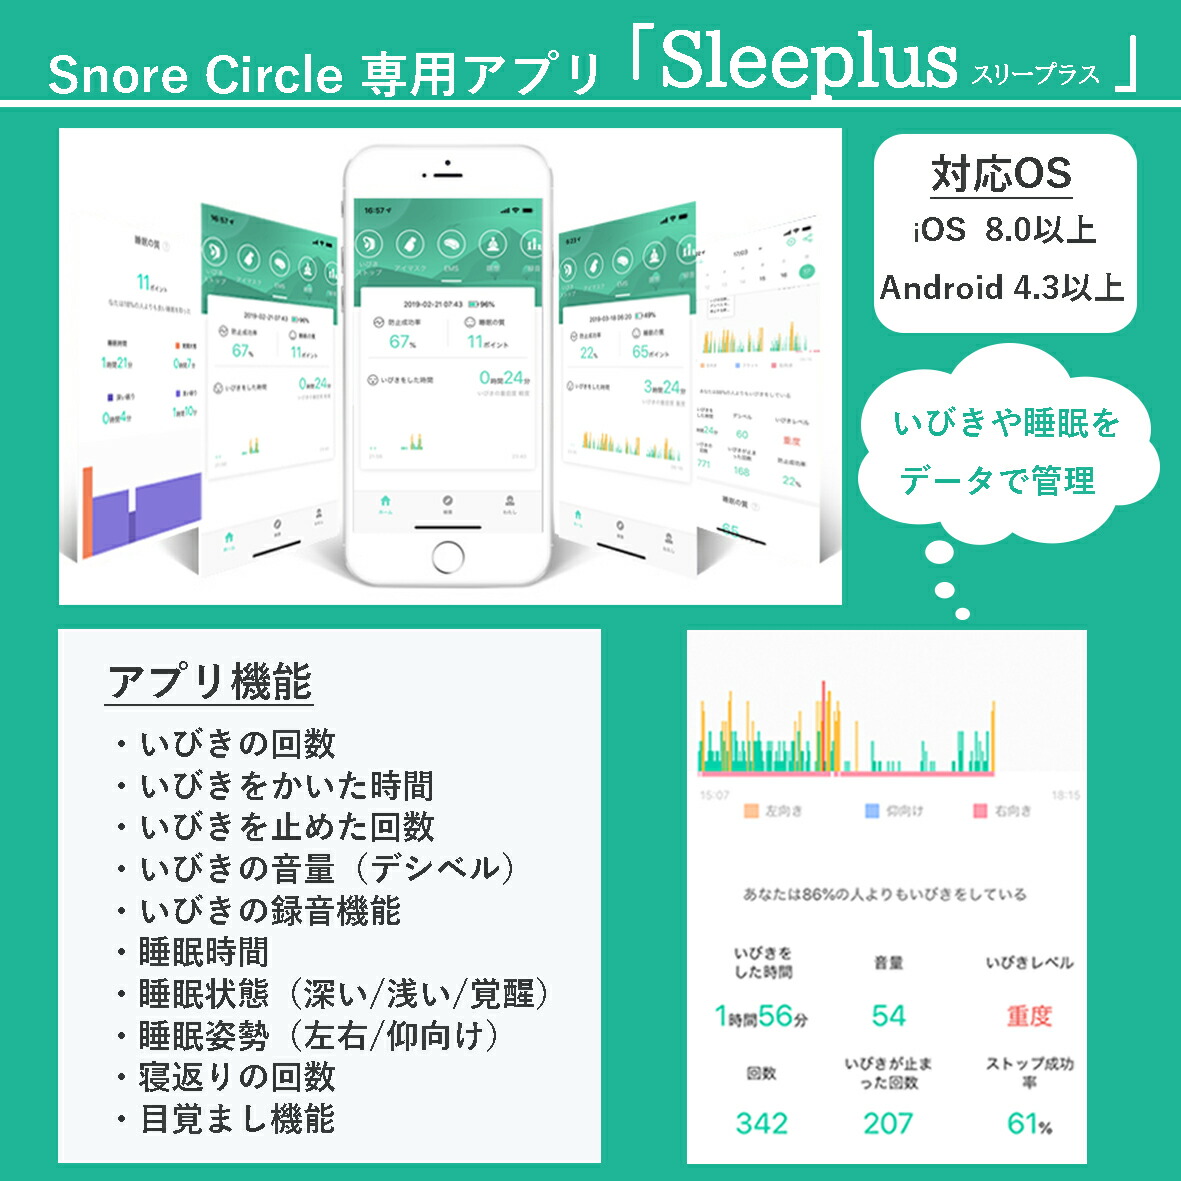 Snore Circle専用アプリ「Sleeplus」
いびきや睡眠をデータで管理できます
対応OSはiOS8.0以上、Android4.3以上